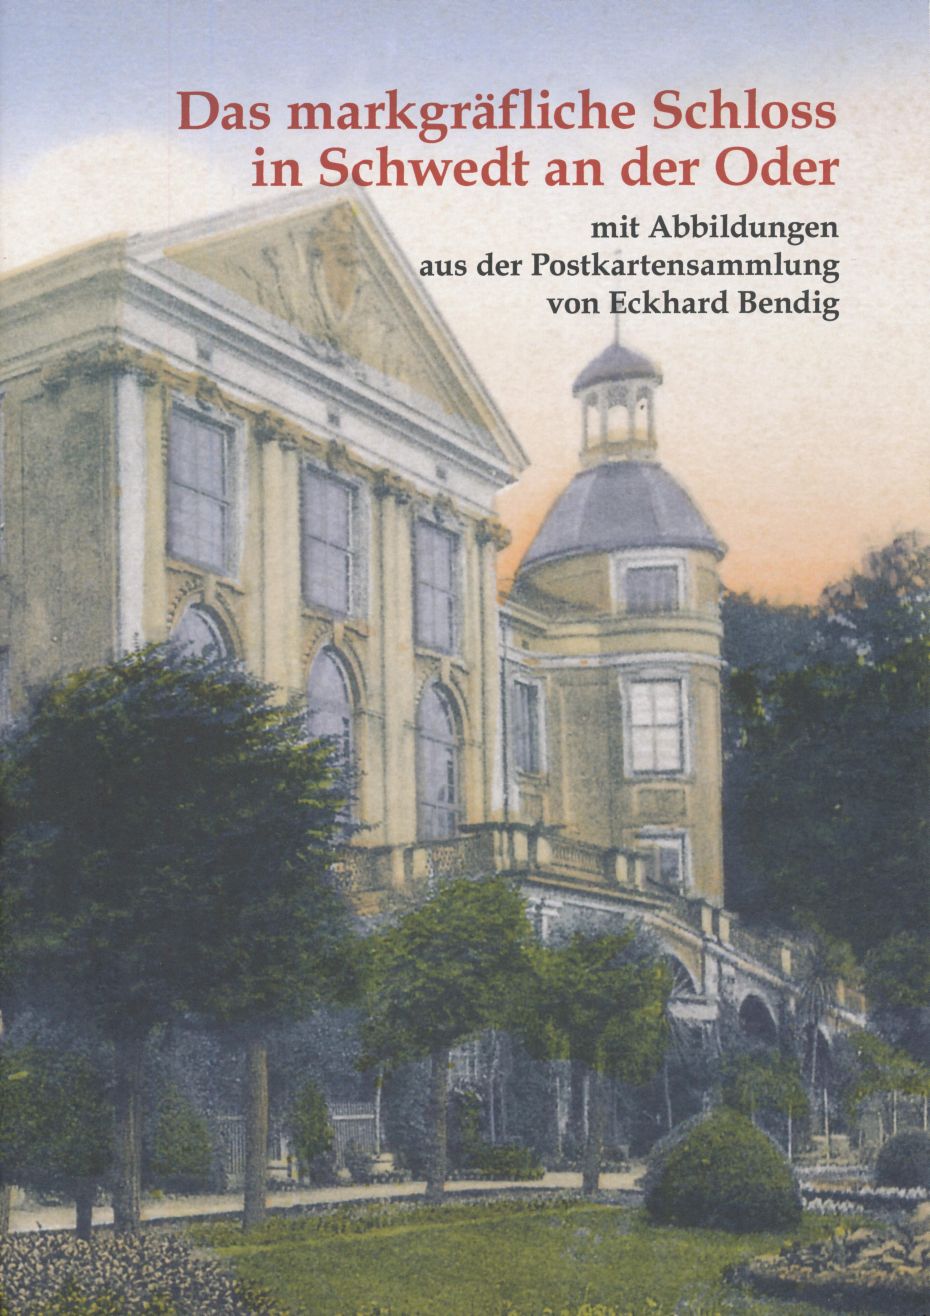 Die Schlossrampe in Schwedt, Detail einer kolorierten Postkarte 